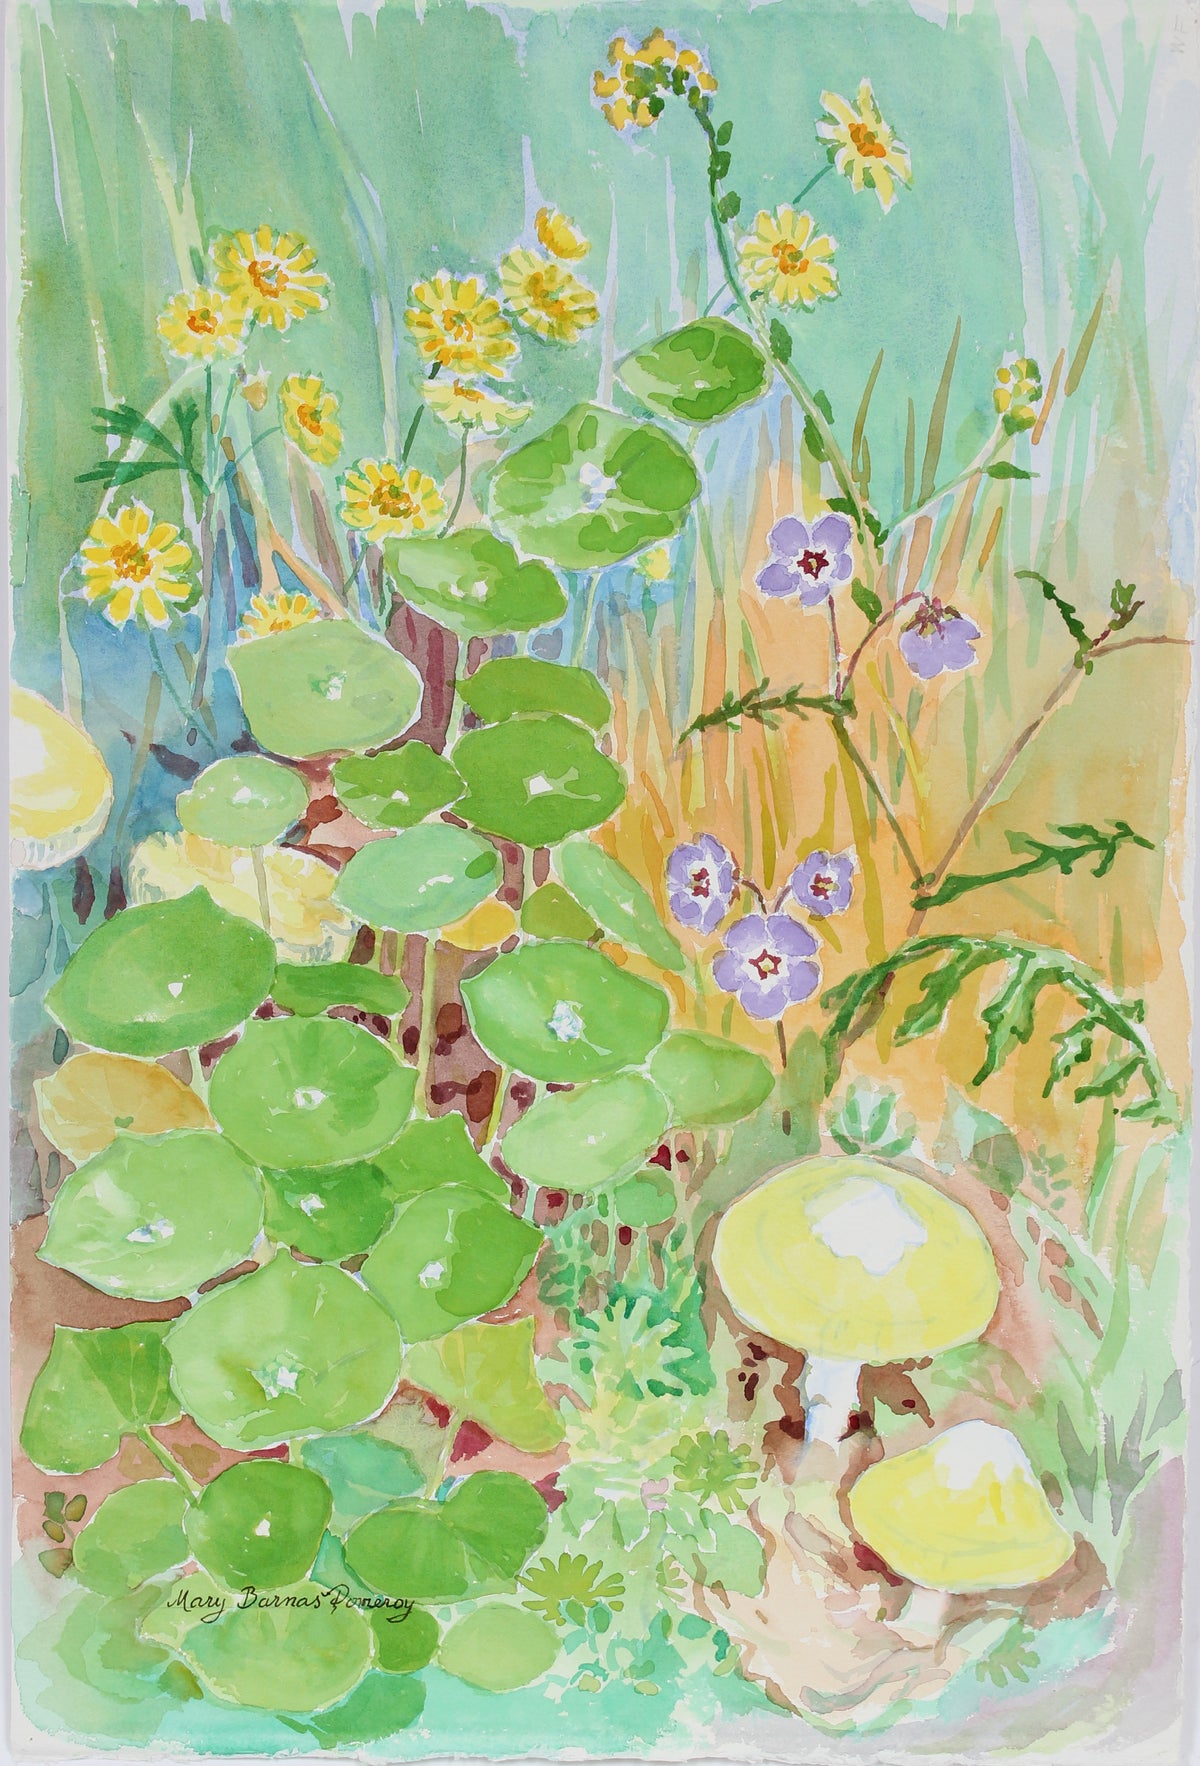 &lt;i&gt;Woodland Companions&lt;/i&gt; &lt;br&gt;2002 Watercolor &lt;br&gt;&lt;br&gt;#A3670